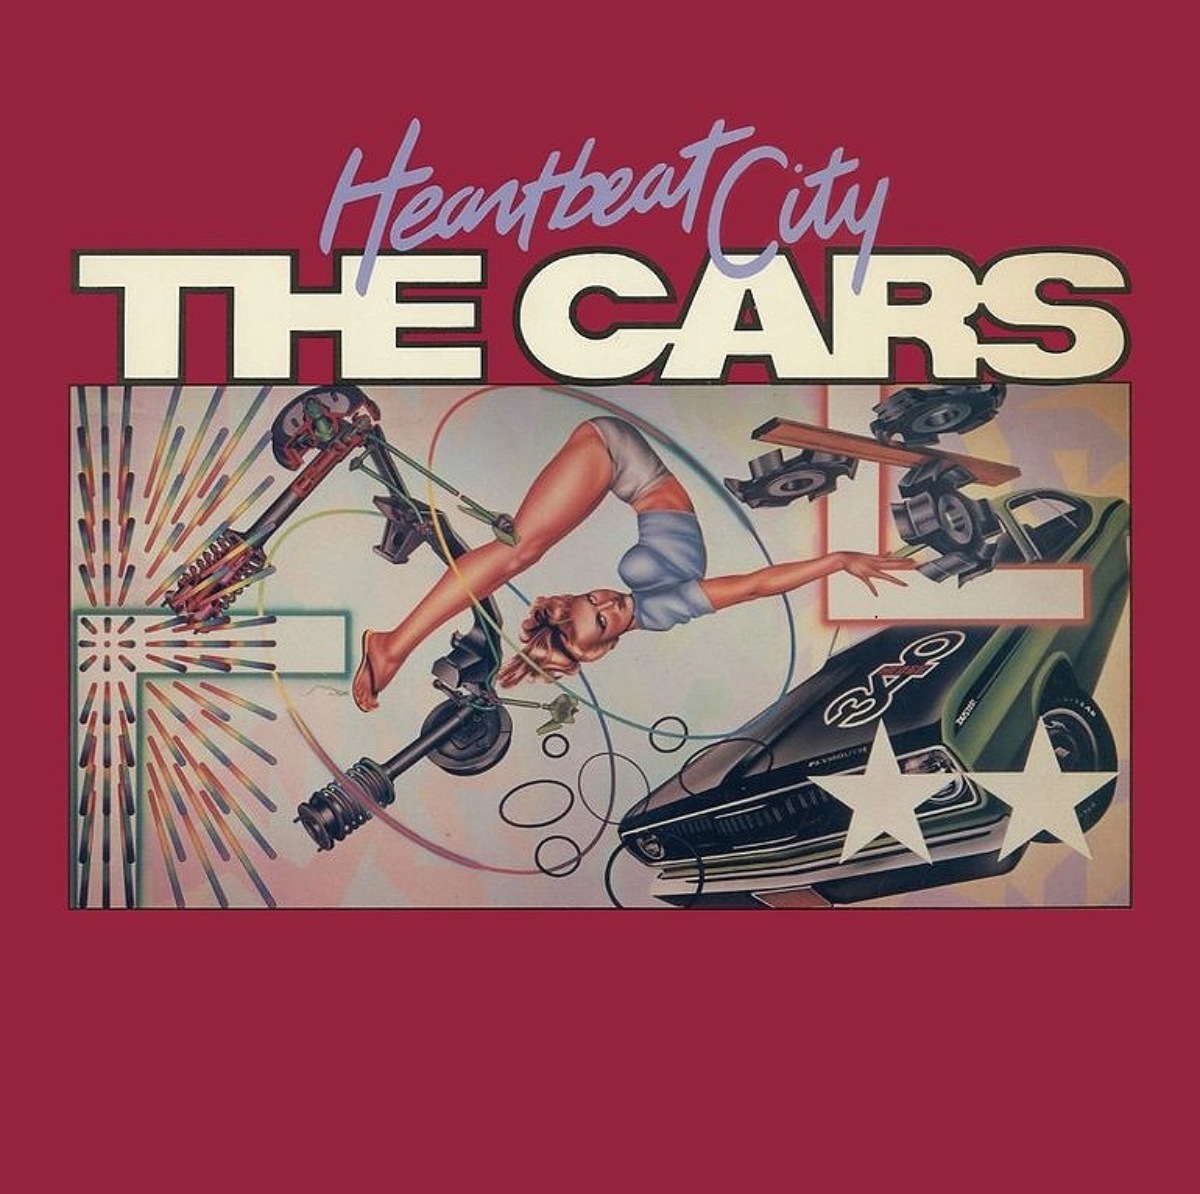 Das Titelbild für "Heartbeat City" von The Cars